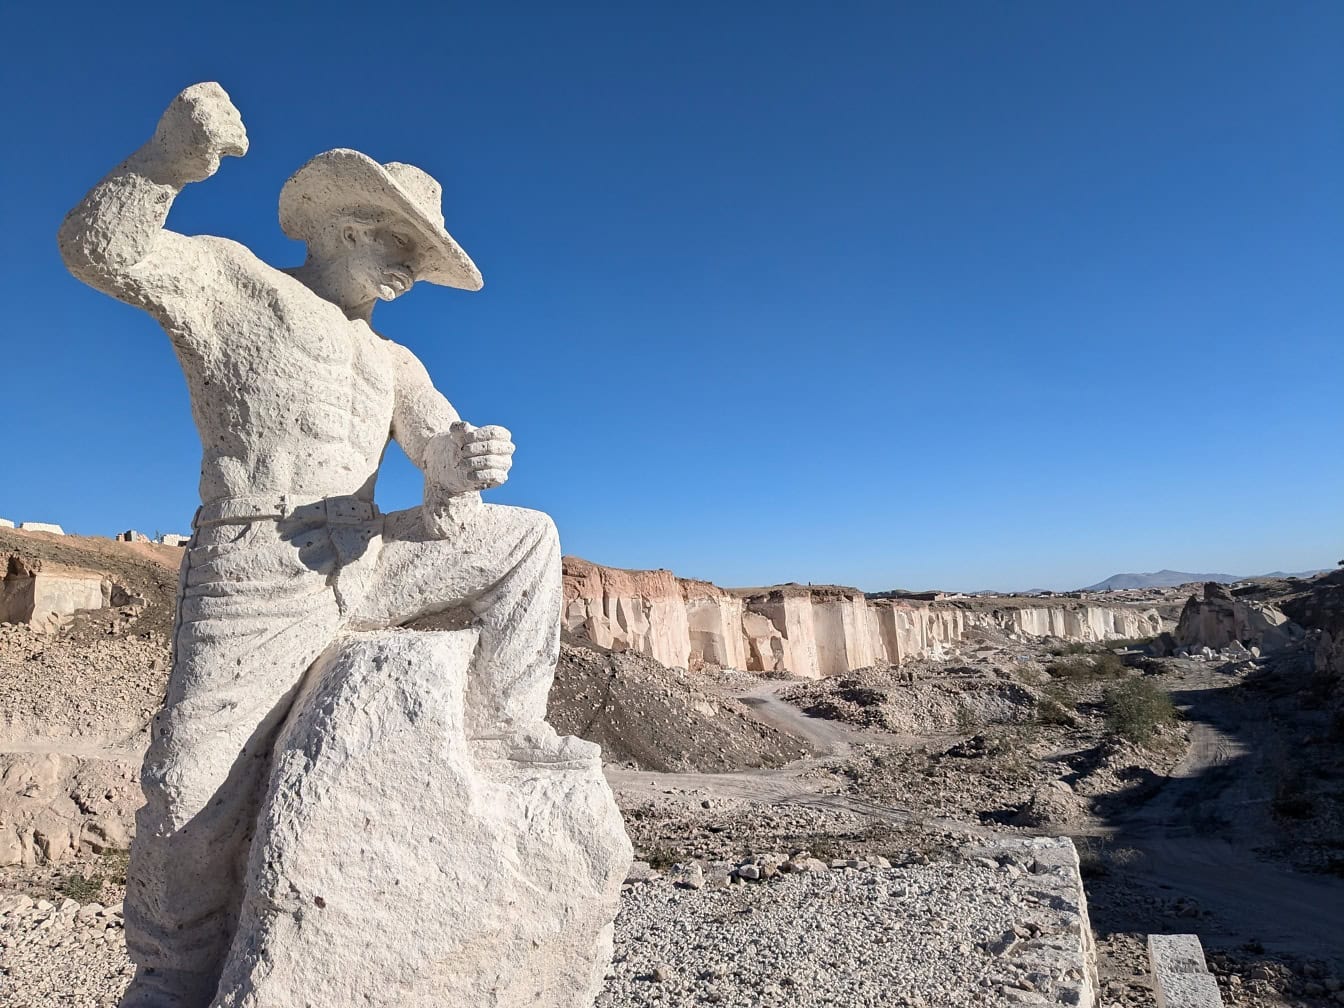 Άγαλμα ενός καουμπόη με καπέλο σε μια έρημο στη διαδρομή Sillar κοντά στο φαράγγι Culebrillas στην Arequipa στο Περού